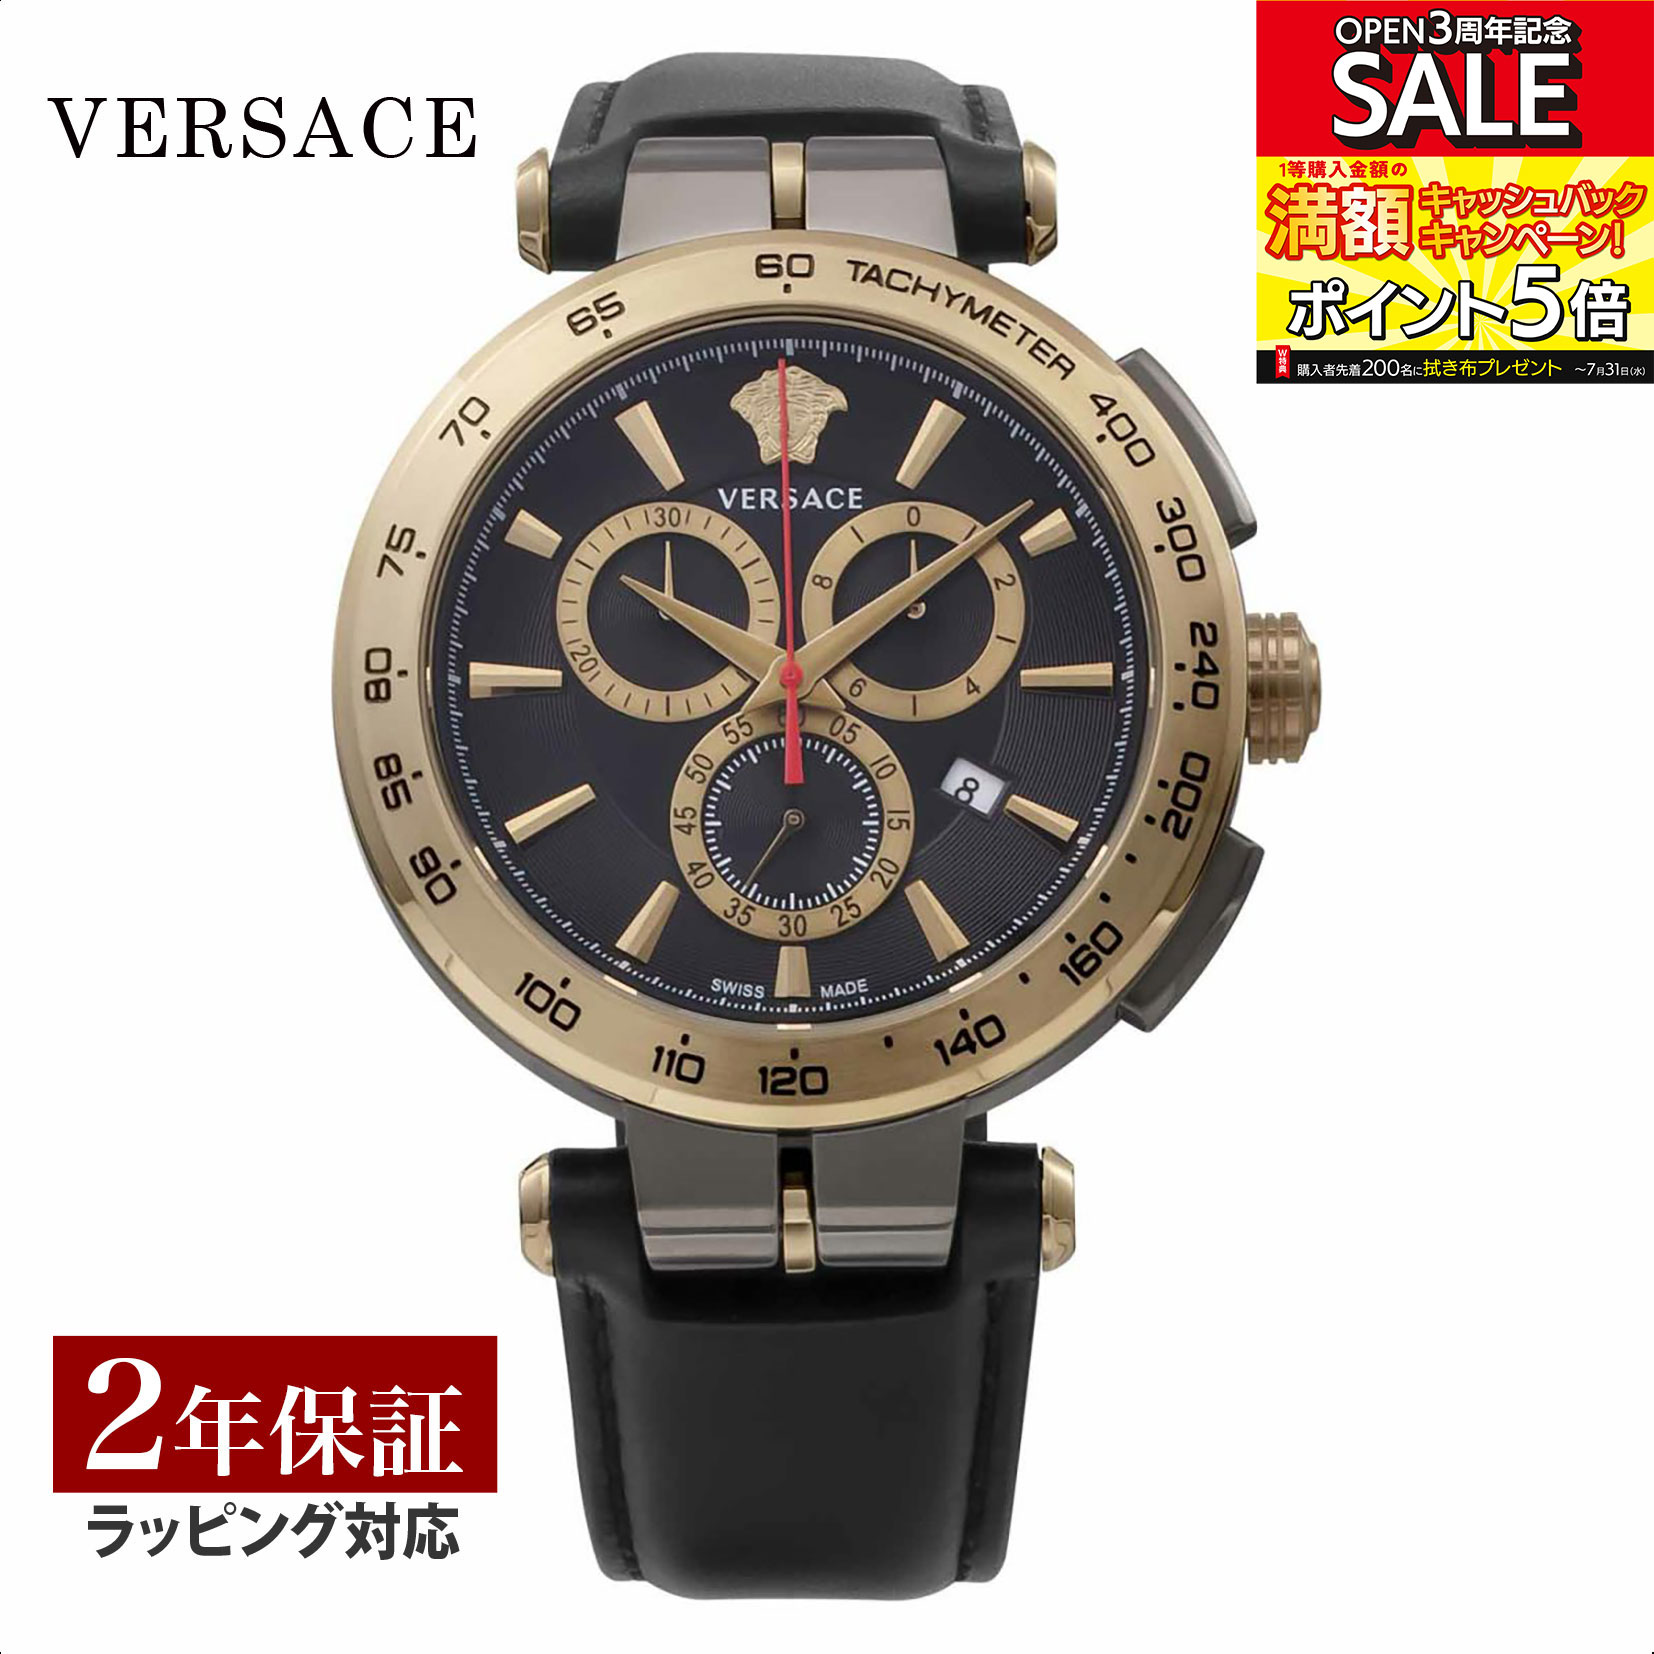 ヴェルサーチェ 腕時計（メンズ） ヴェルサーチェ ヴェルサーチ VERSACE メンズ 時計 AION Chrono gent クォーツ ブラック VE6CA0323 時計 腕時計 高級腕時計 ブランド